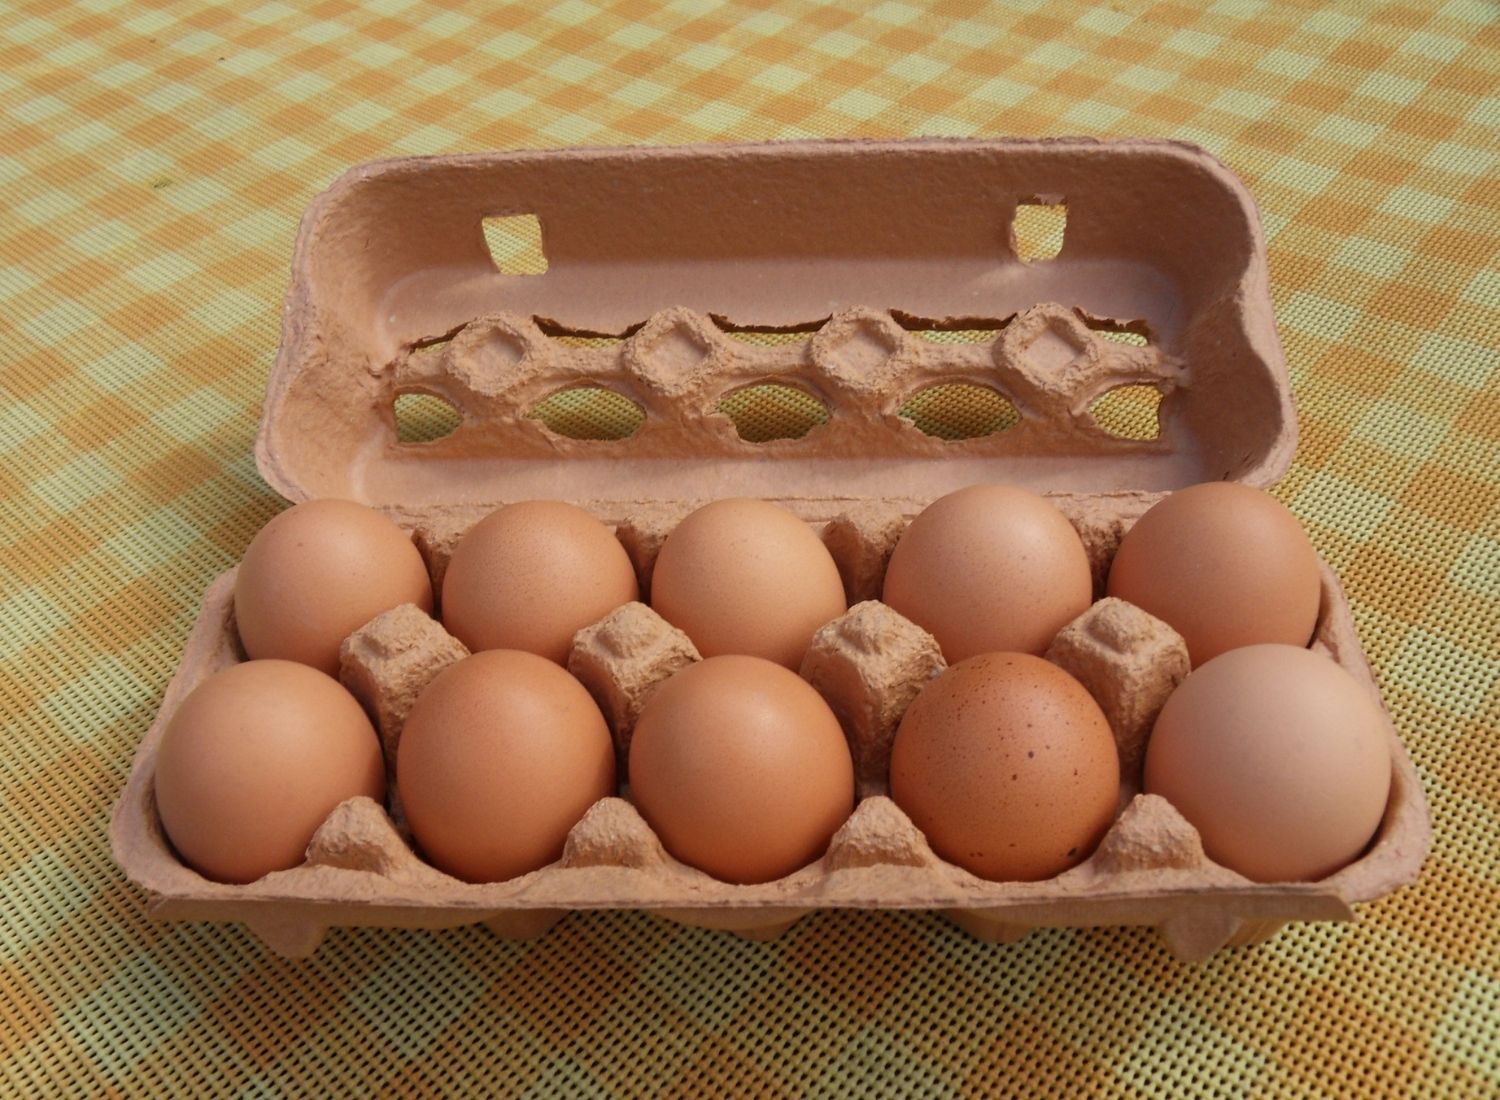 ways to Reuse Egg Cartons